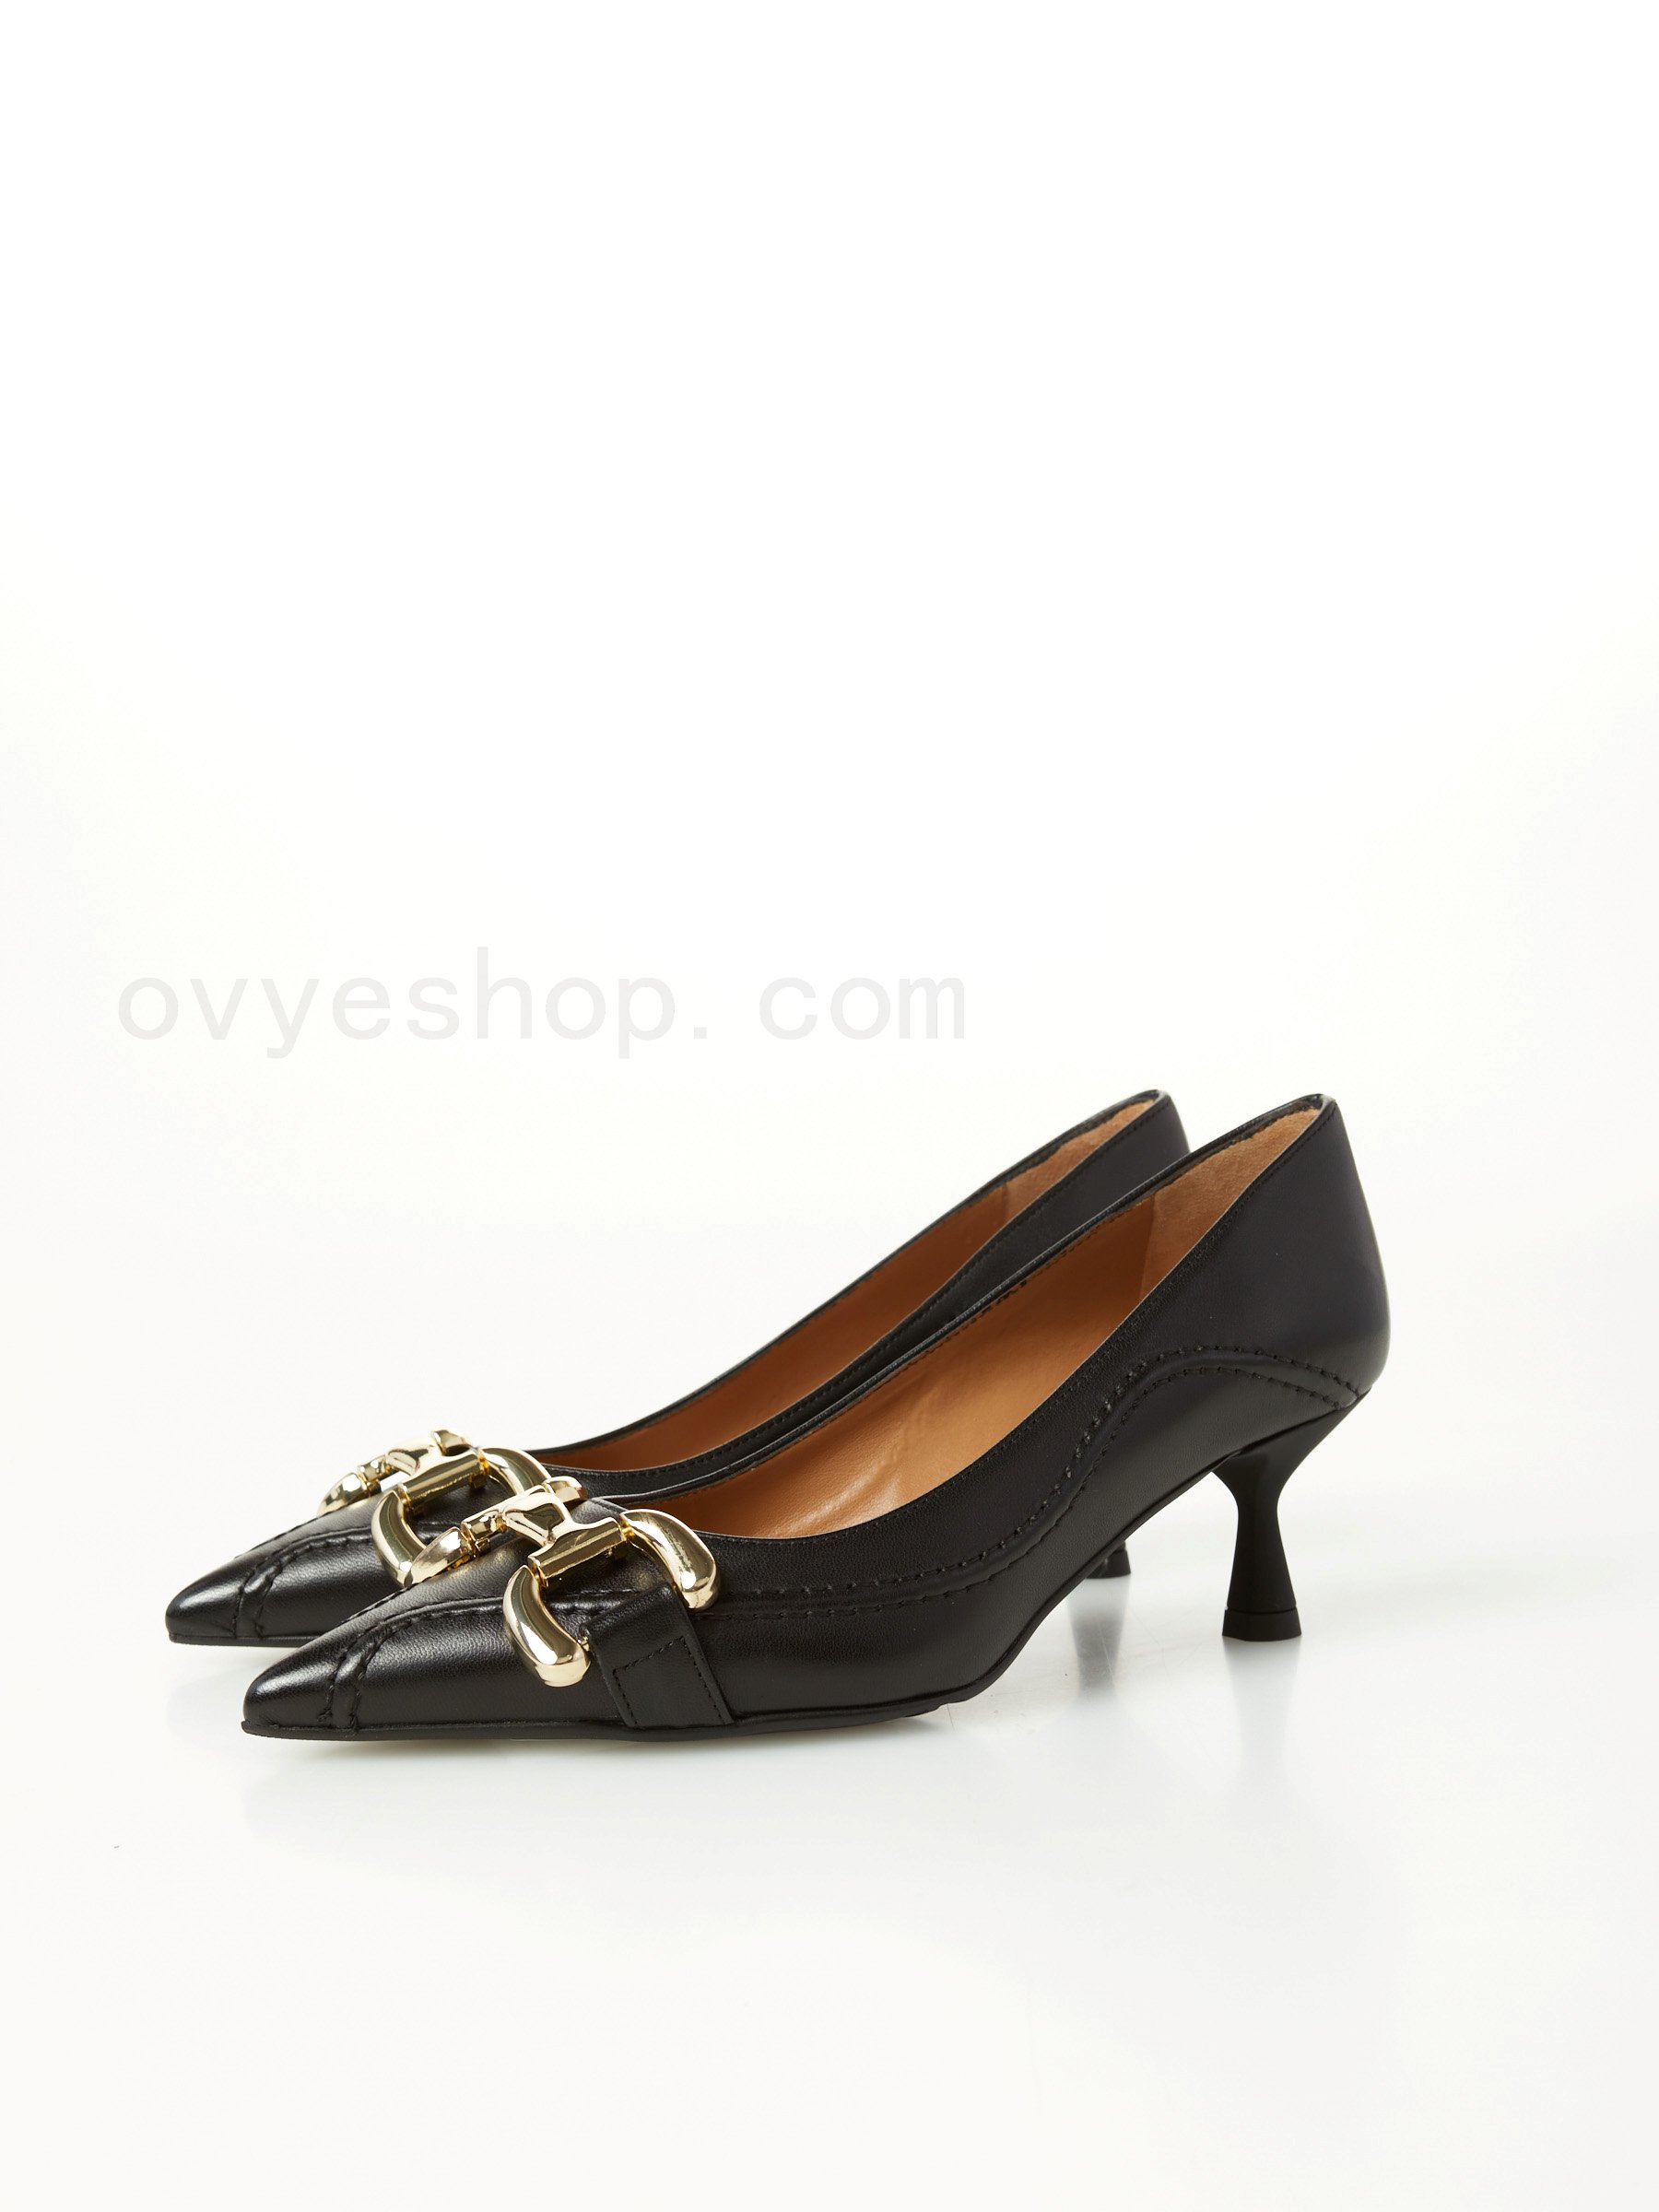 (image for) scarpe alla moda Leather Pump F0817885-0604